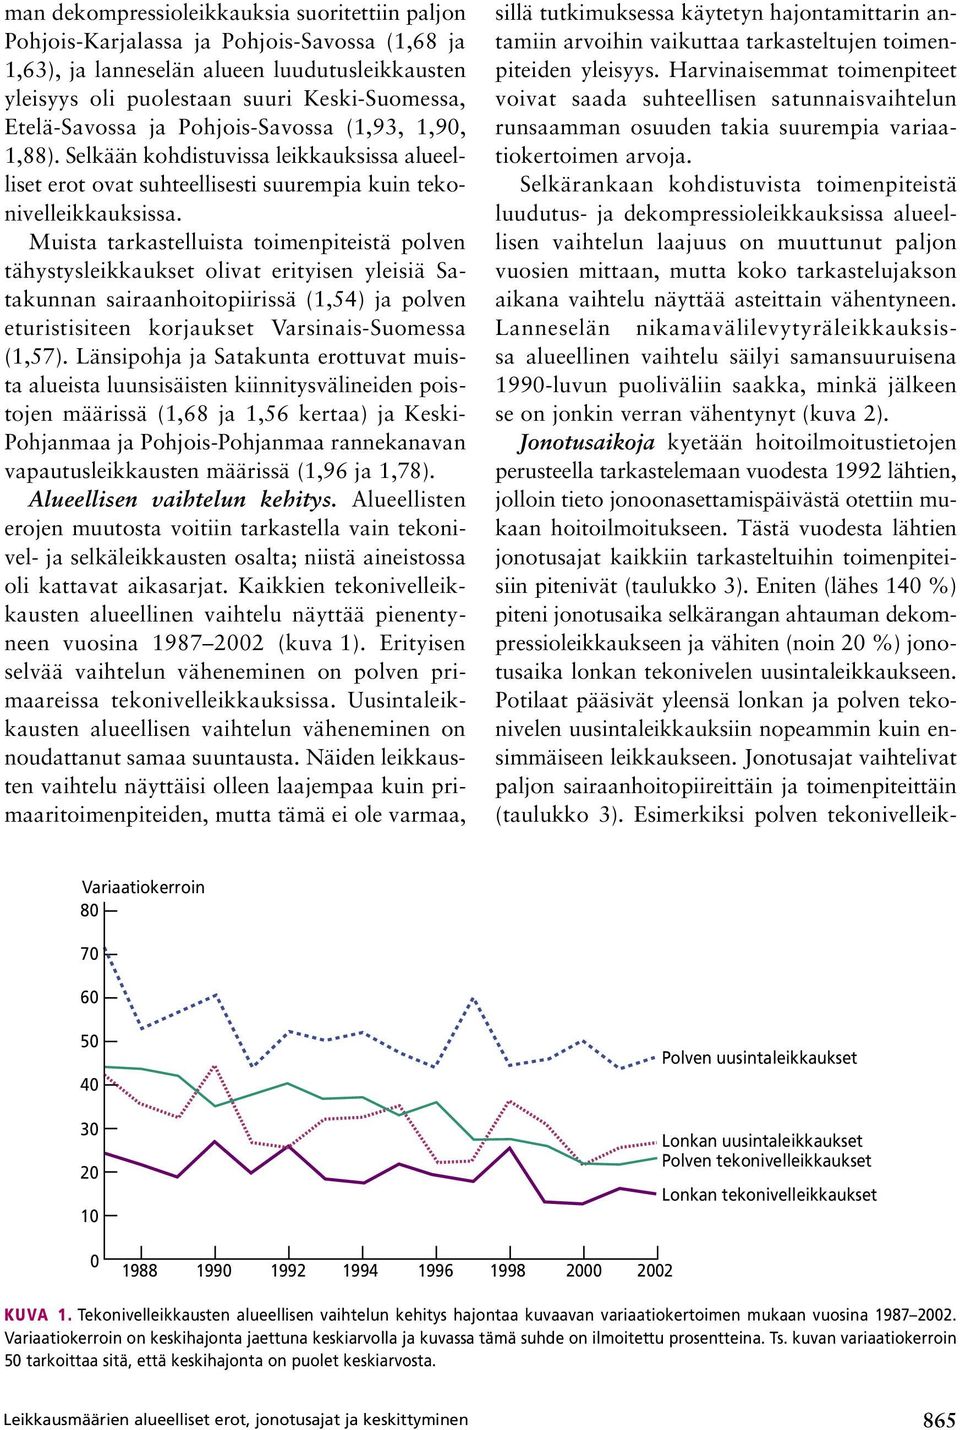 Muista tarkastelluista toimenpiteistä polven tähystysleikkaukset olivat erityisen yleisiä Satakunnan sairaanhoitopiirissä (1,54) ja polven eturistisiteen korjaukset Varsinais-Suomessa (1,57).